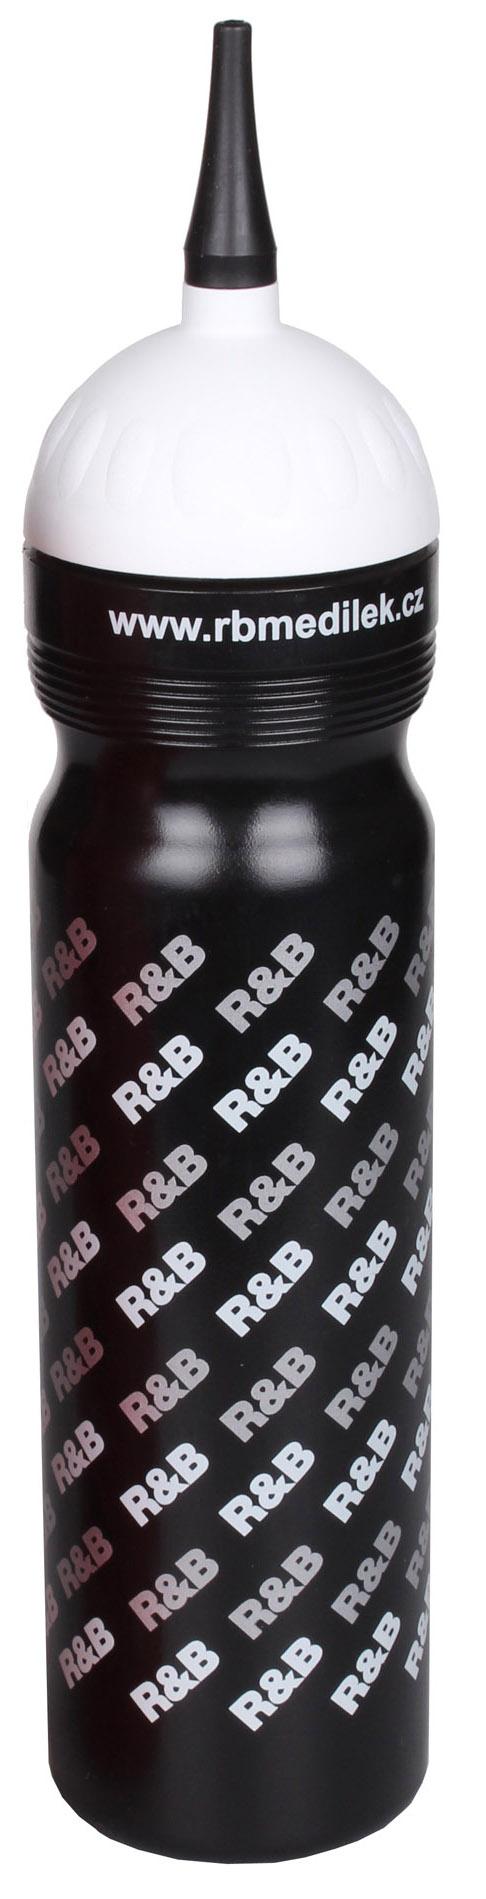 športové fľaše logo R & B s hubicou 8ks + nosič 1ks   - 111 33 Čierna